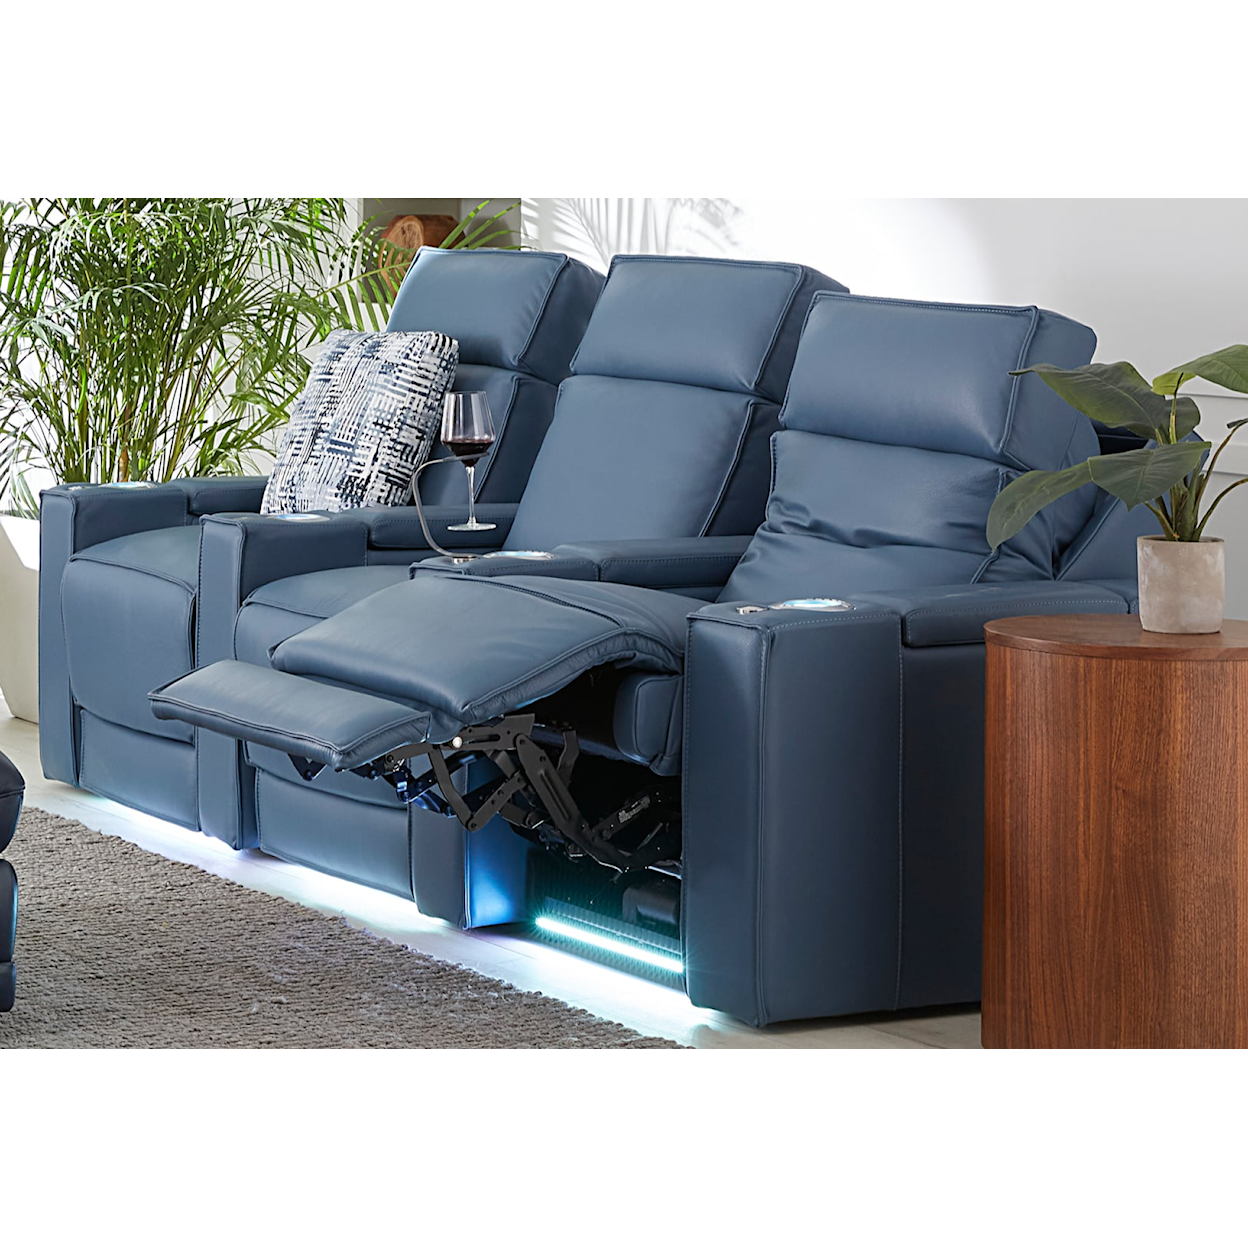 Palliser ACE 3-Seat Power Reclining and Lumbar Sofa